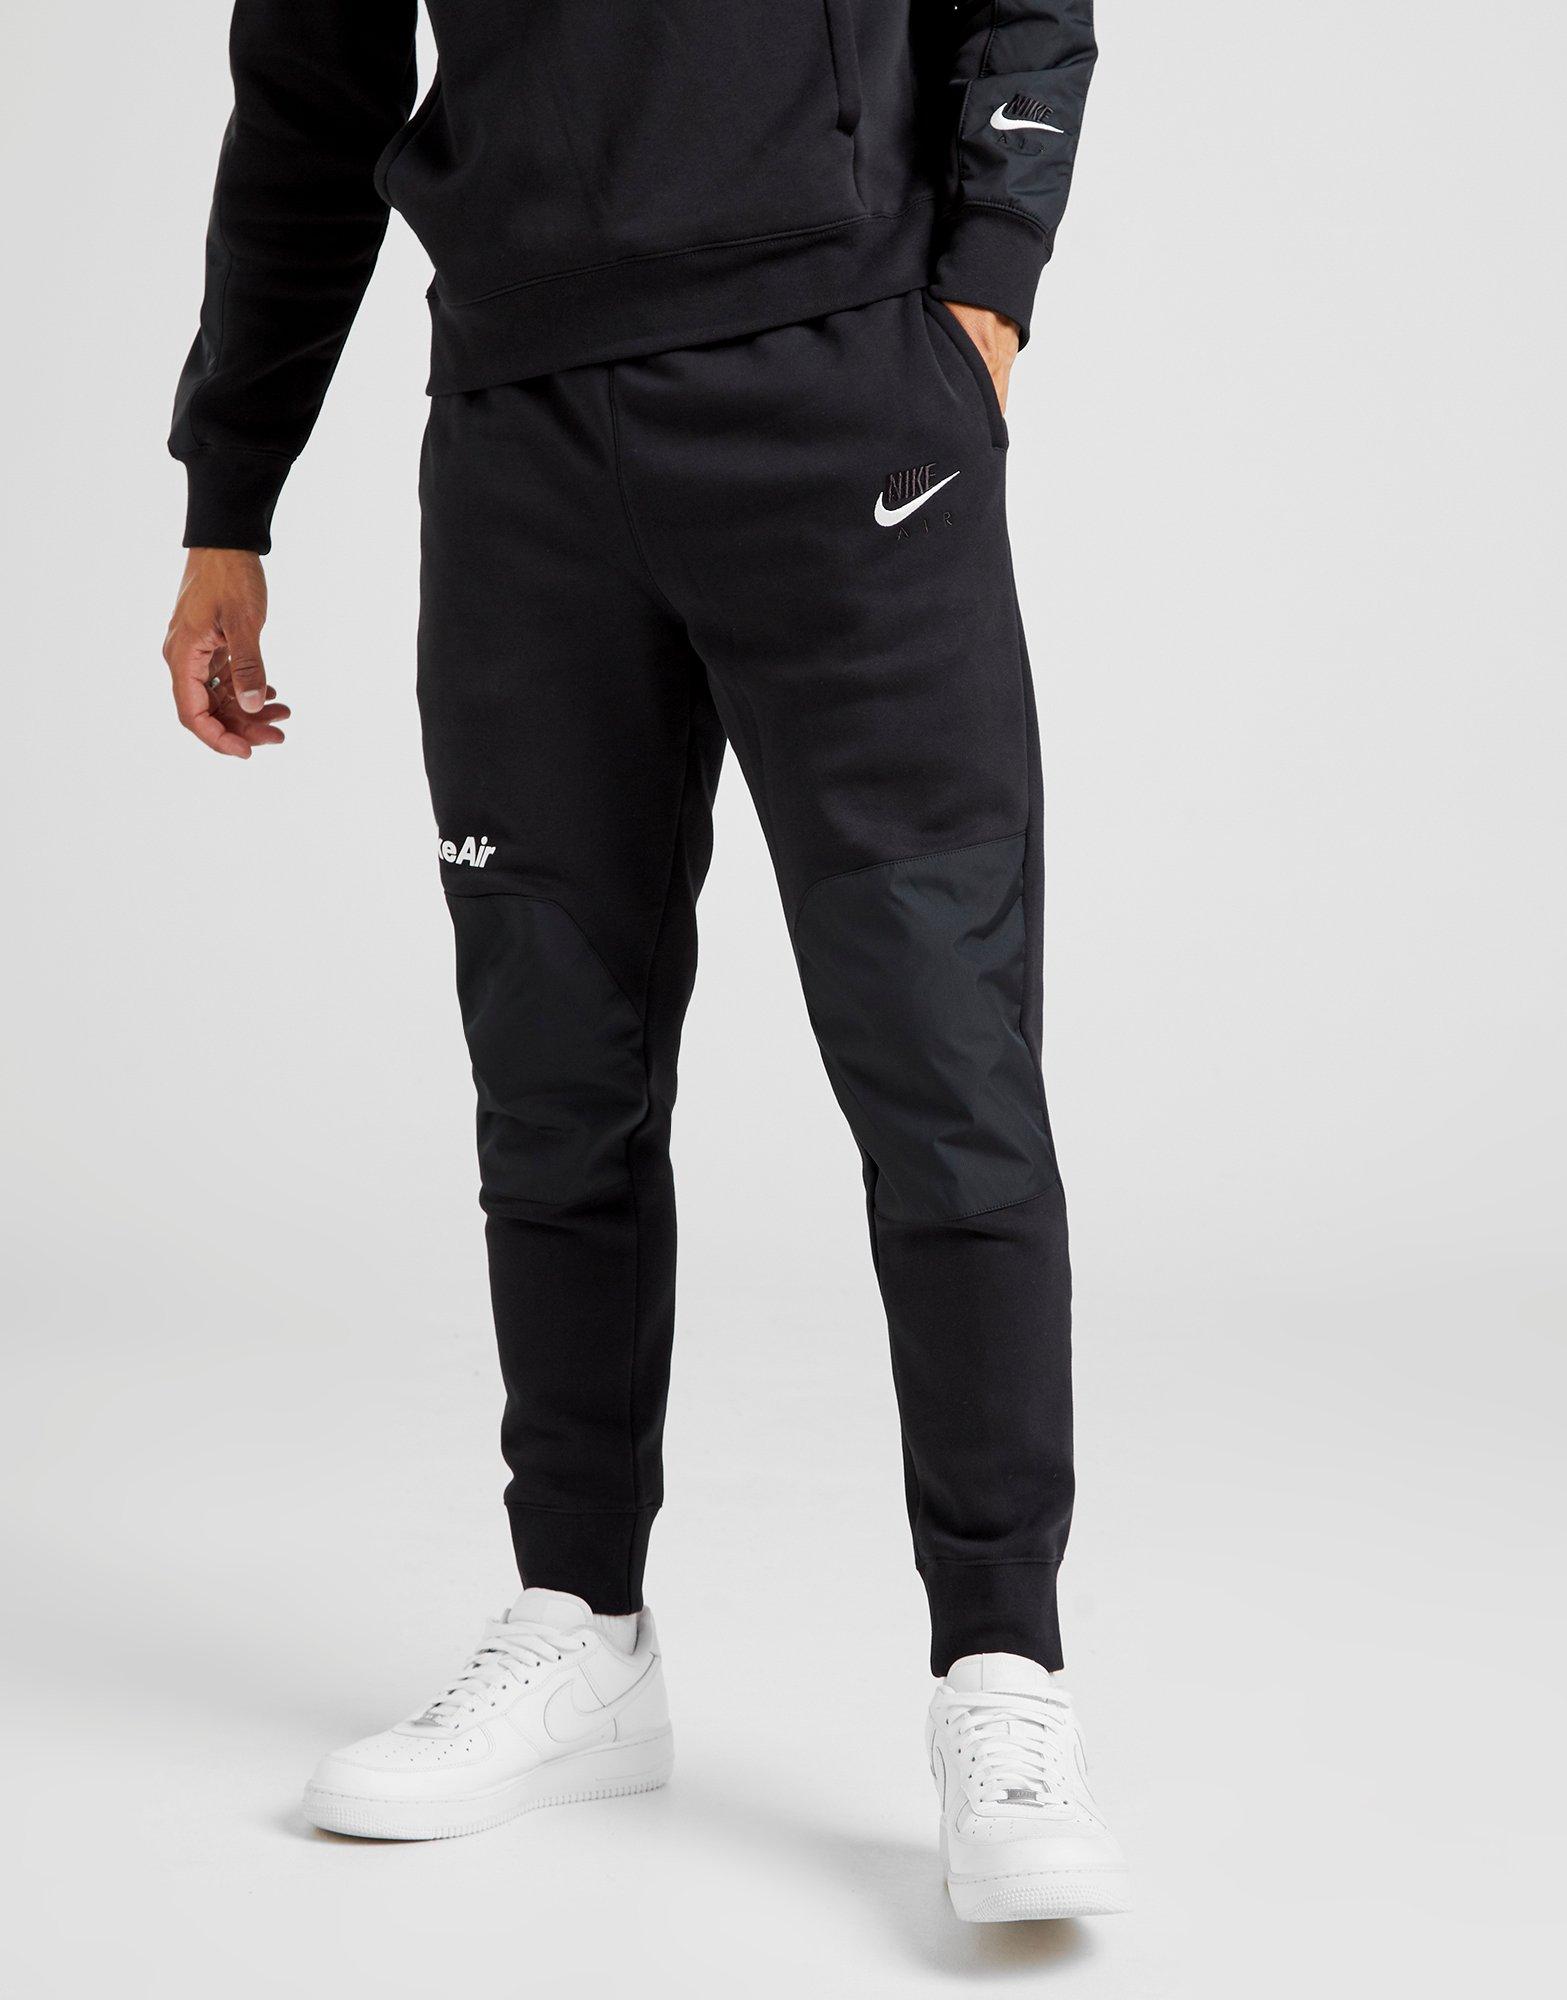 Acheter Noir Nike Jogging Air Homme